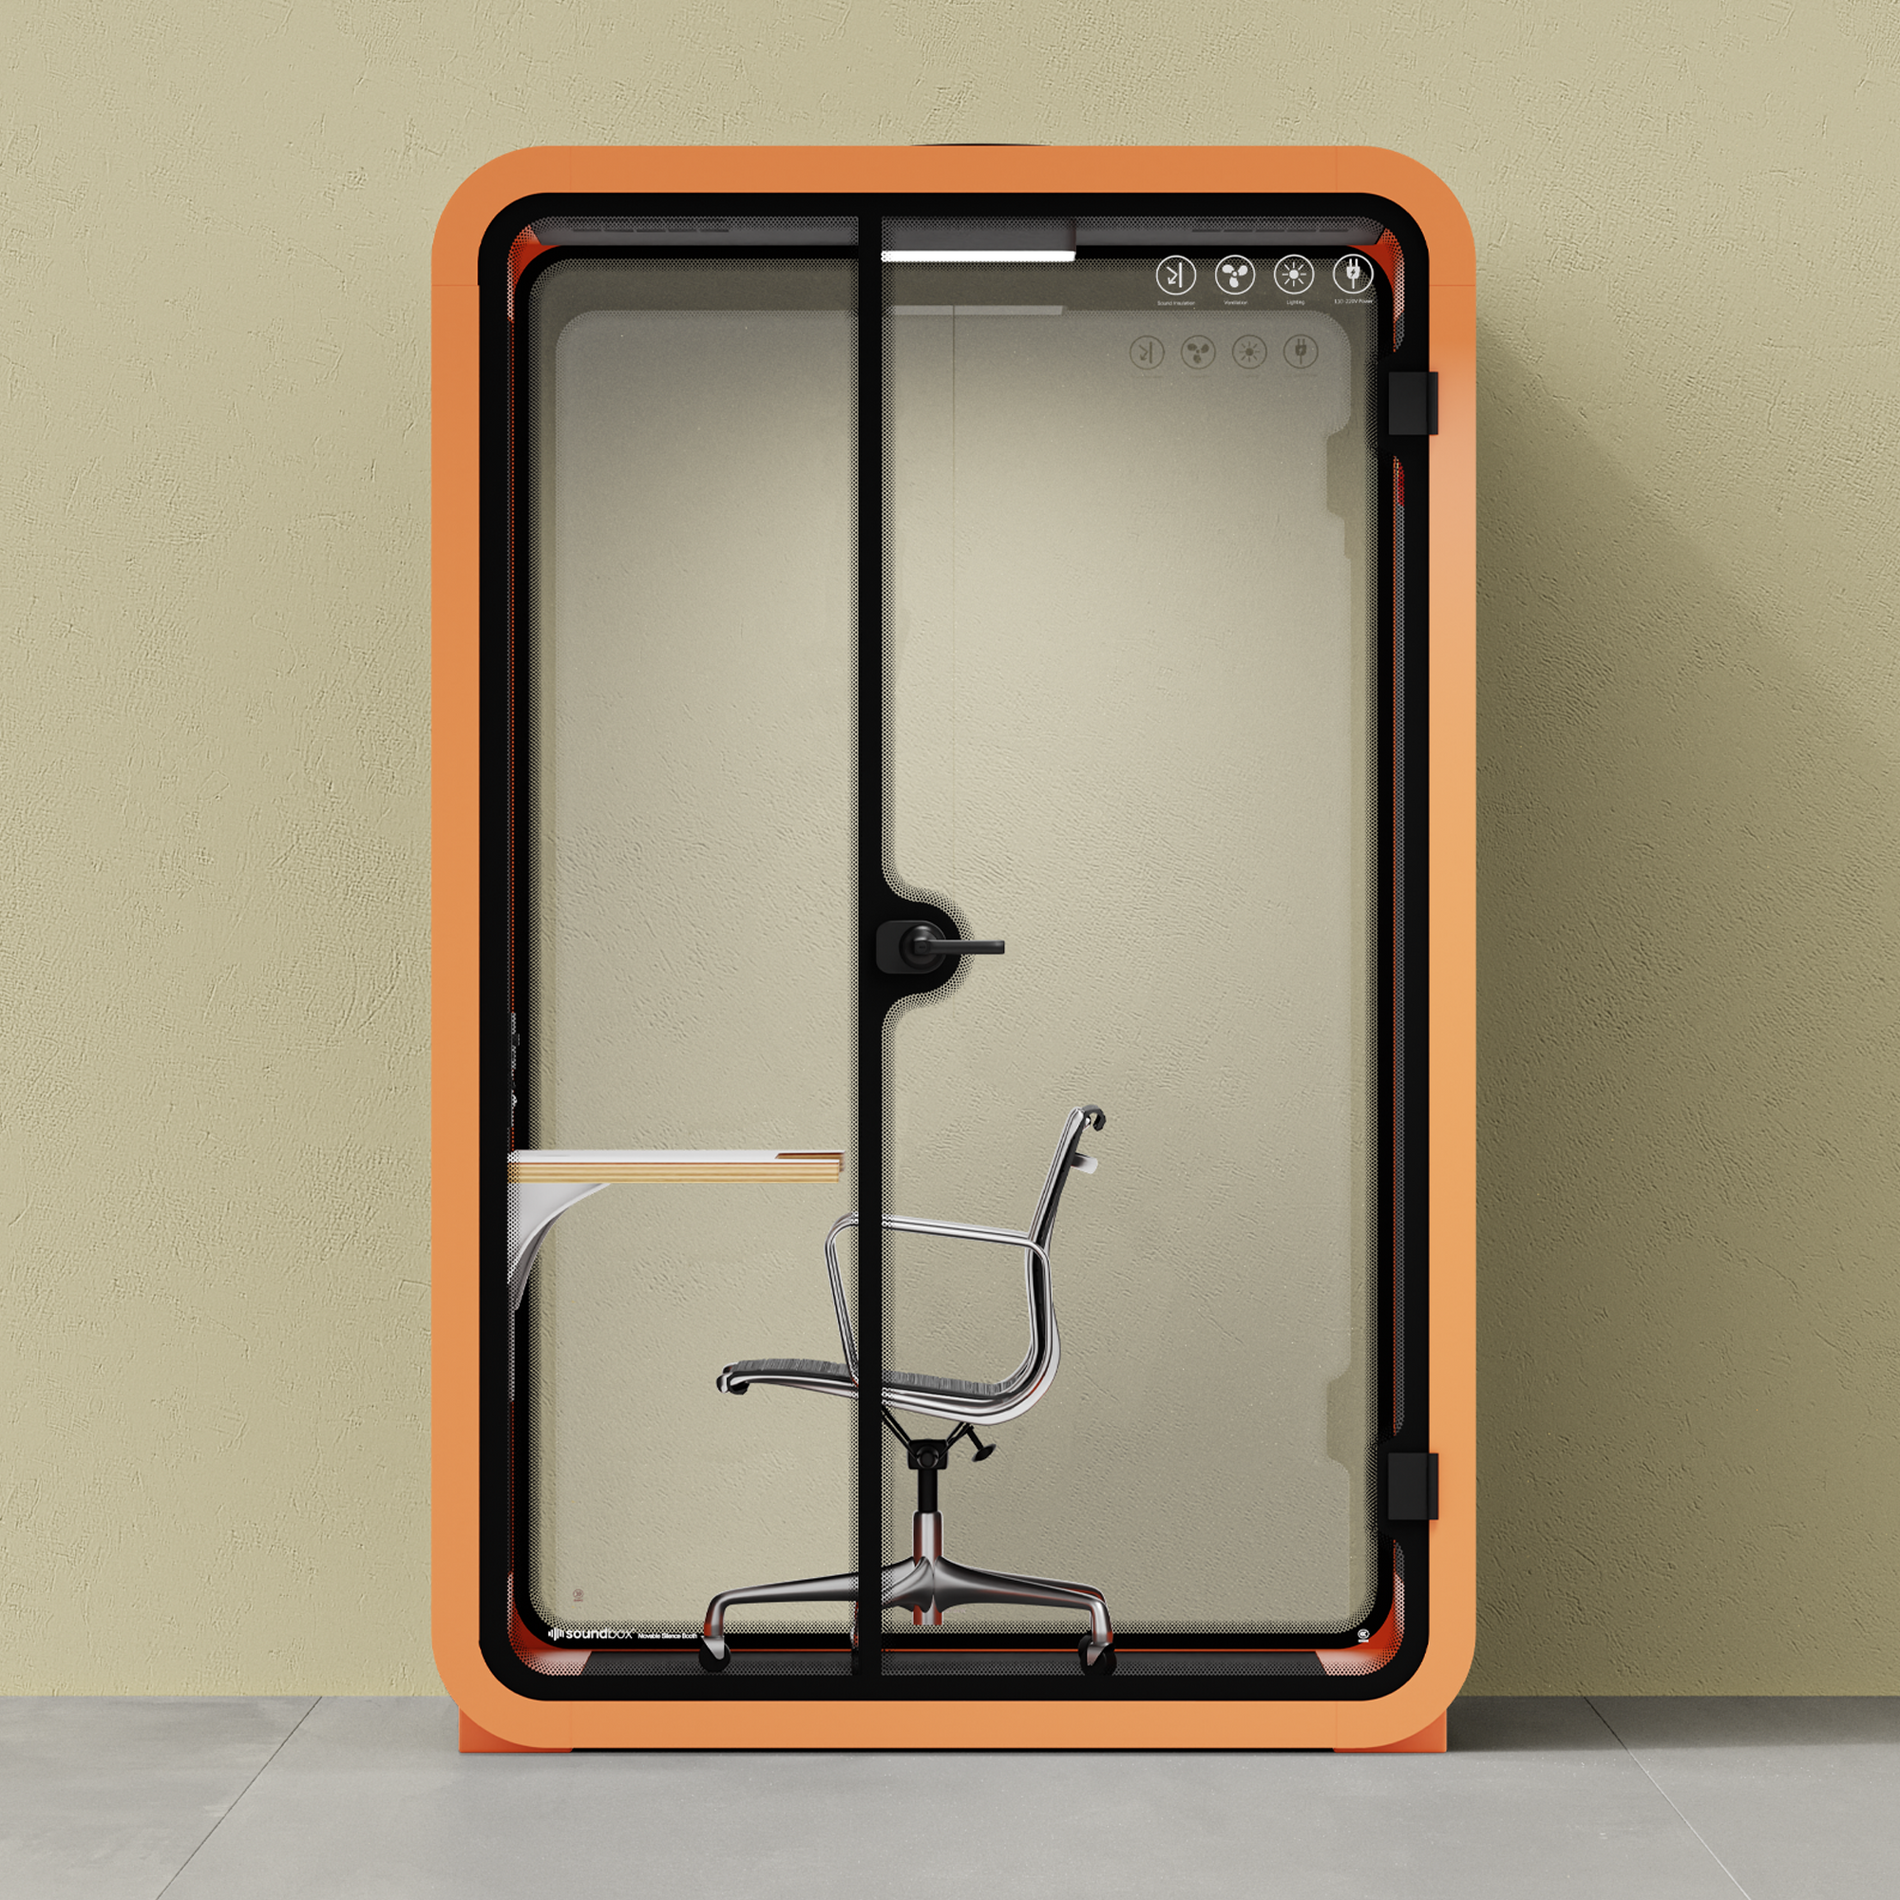 Quell - Office Pod - 2 PersonOrange / Dark Gray / Work Station + Designer Office Chair